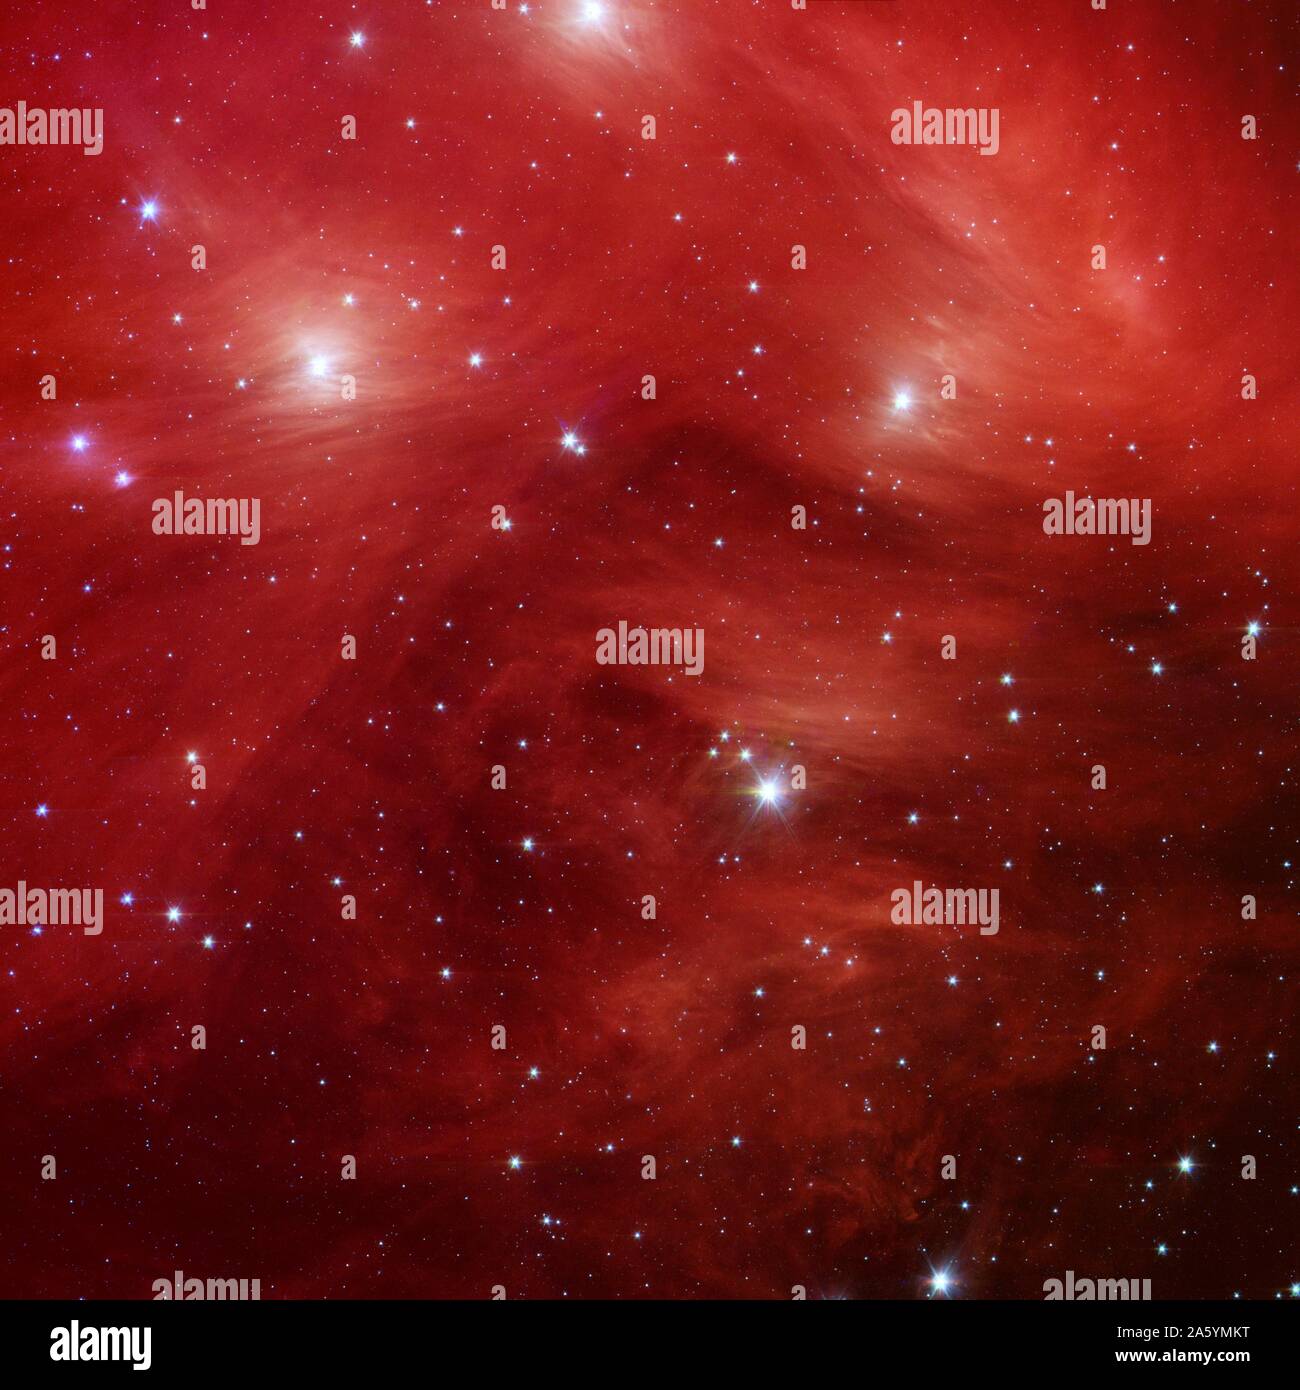 Le Sette sorelle, noto anche come le Pleiadi star cluster, situato a più di 400 anni luce di distanza nella costellazione del Toro. Telescopio spaziale Spitzer. Foto Stock